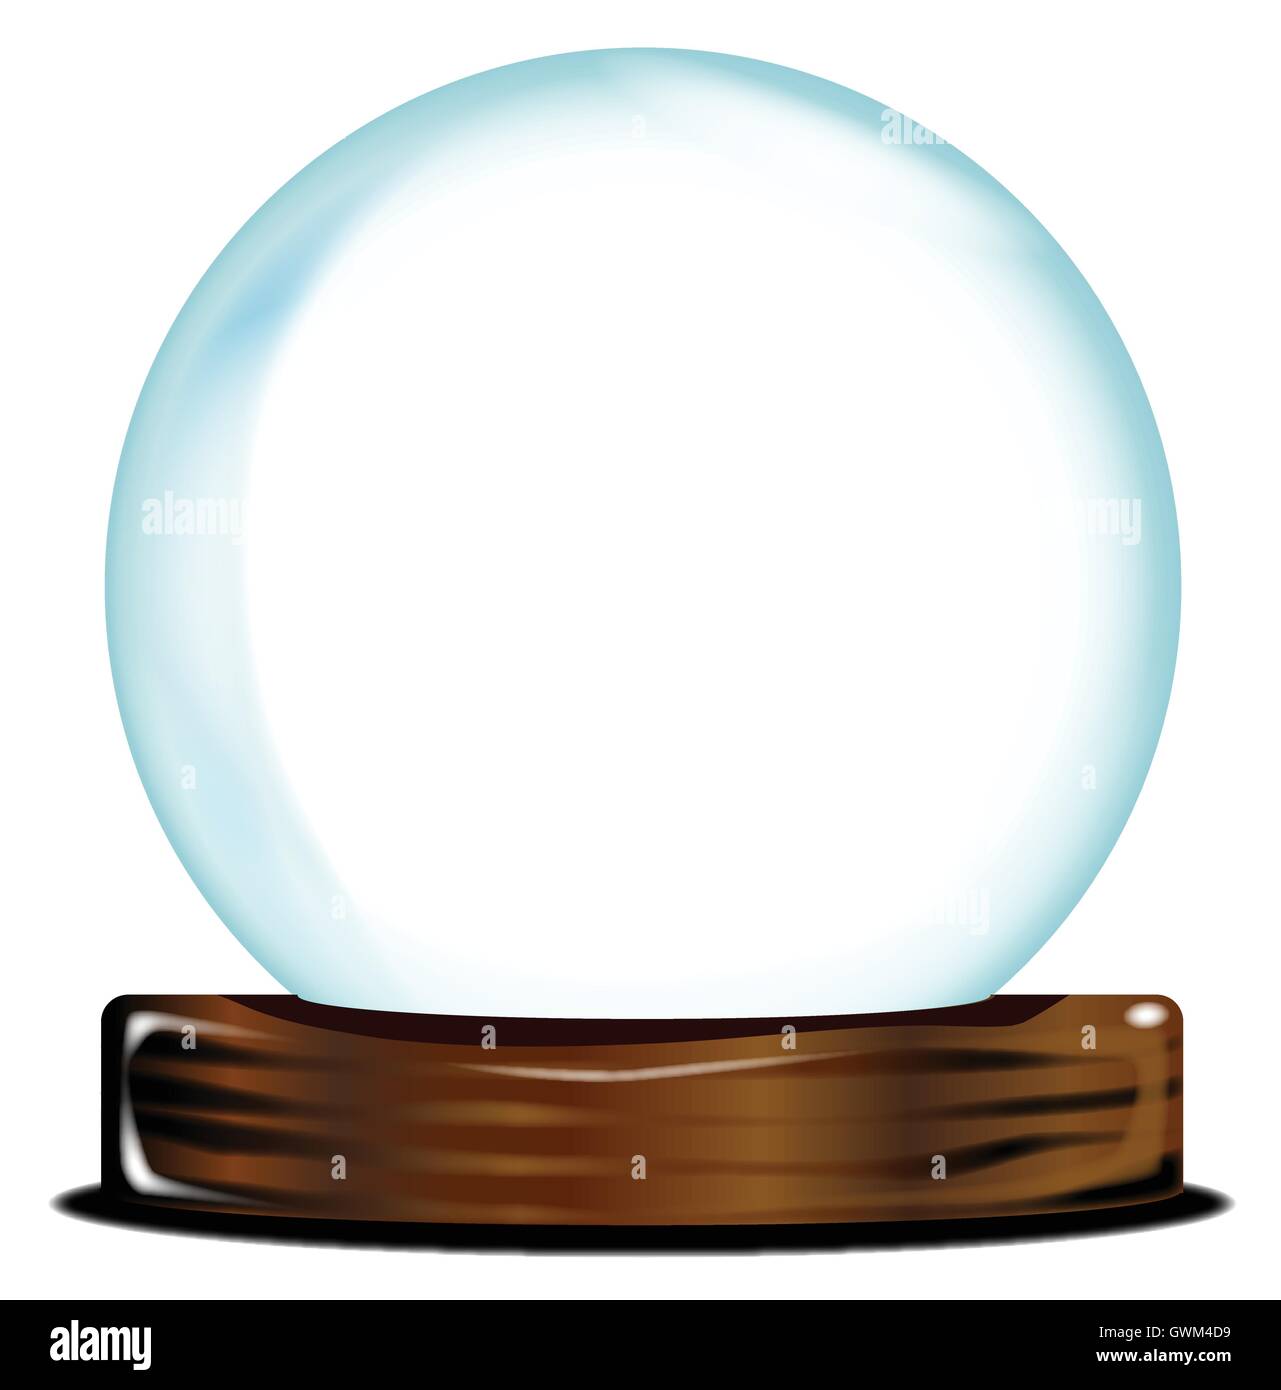 Une boule de cristal blanc sur over a white background Illustration de Vecteur